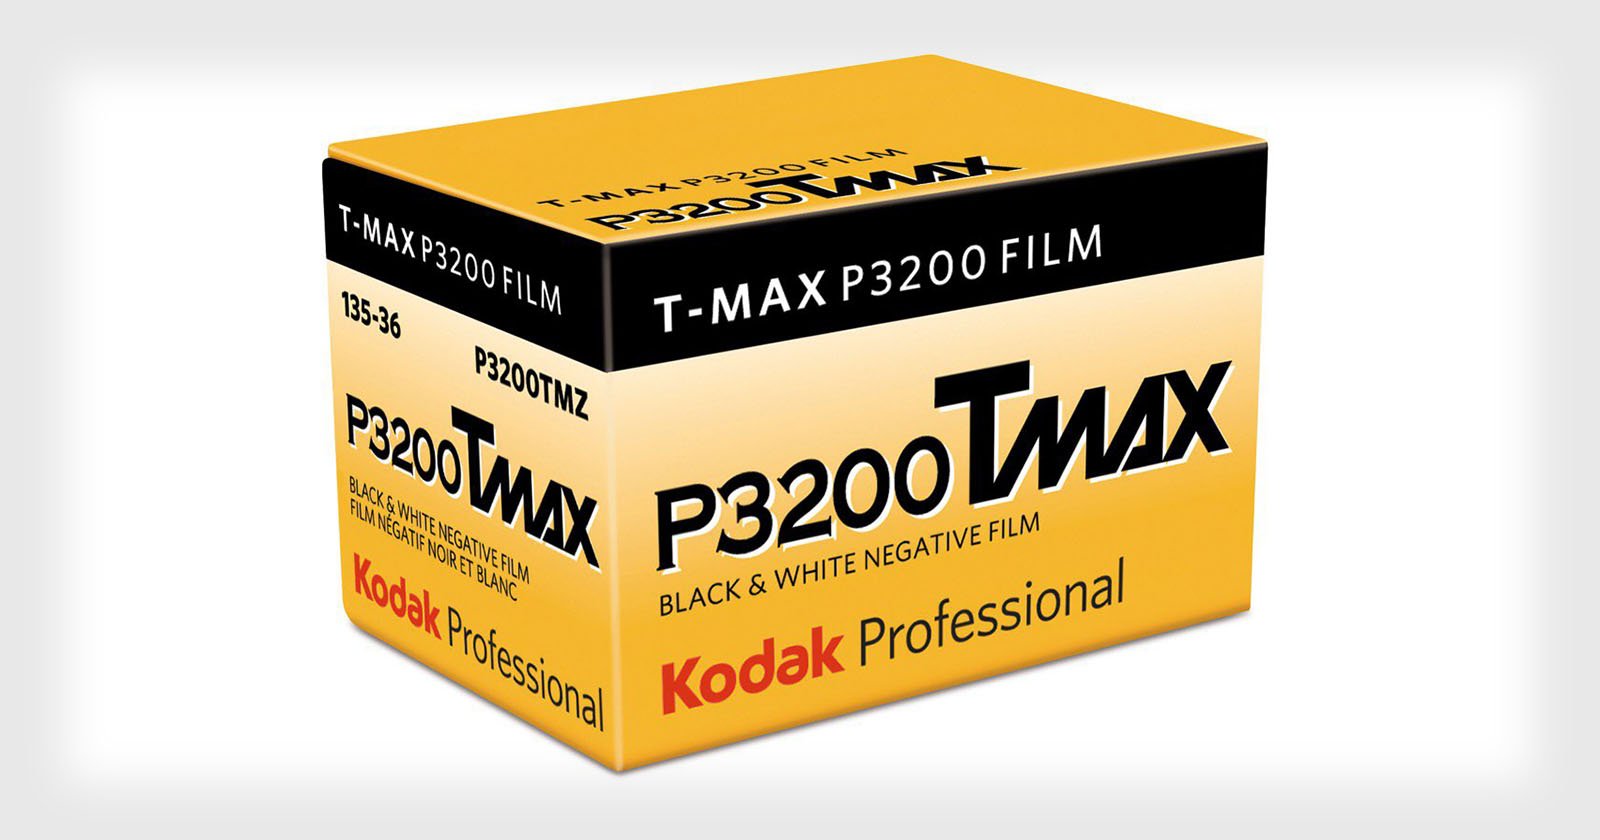 Kodak is Bringing Back T-MAX P3200 Film